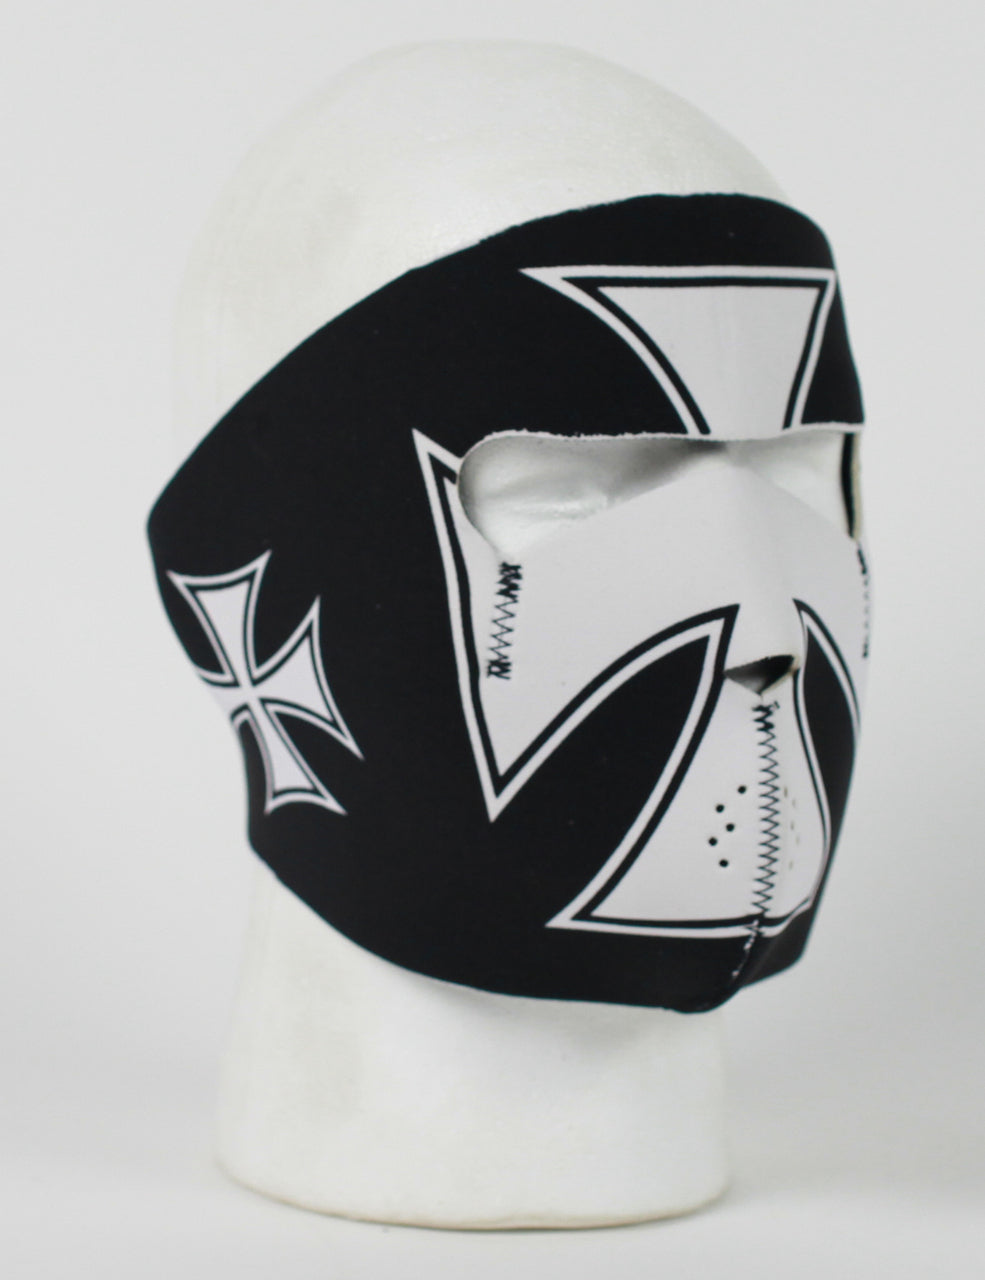 Iron Cross Protective Neoprene Full Face Ski Mask